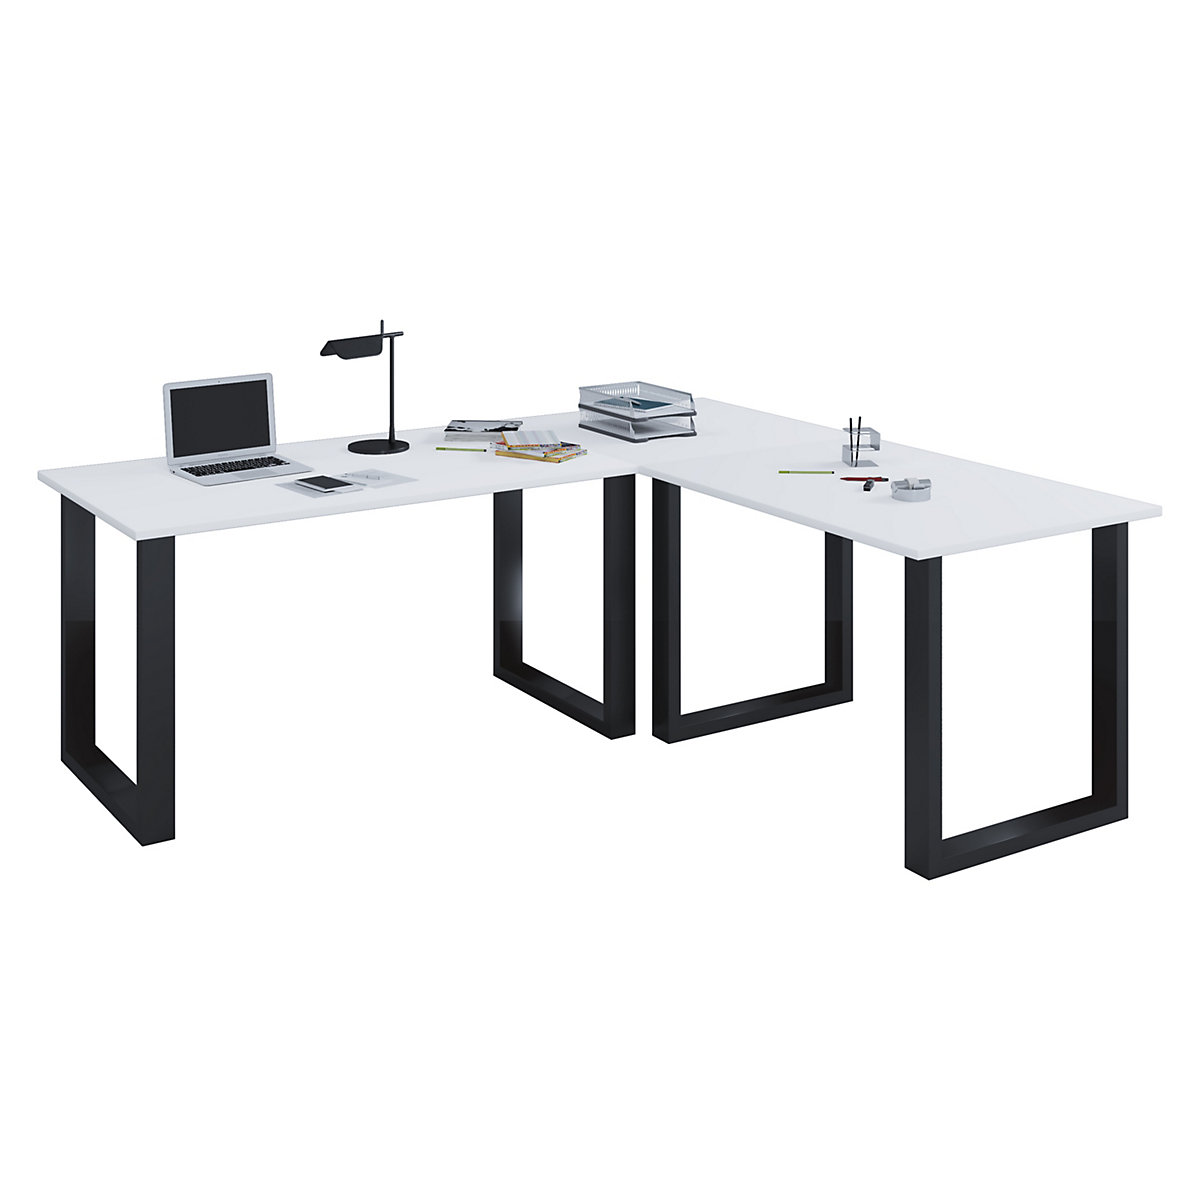 VCM Eckschreibtisch Schreibtisch Büromöbel Computertisch Winkeltisch Tisch Büro Lona 160 x 160 x 50 cm